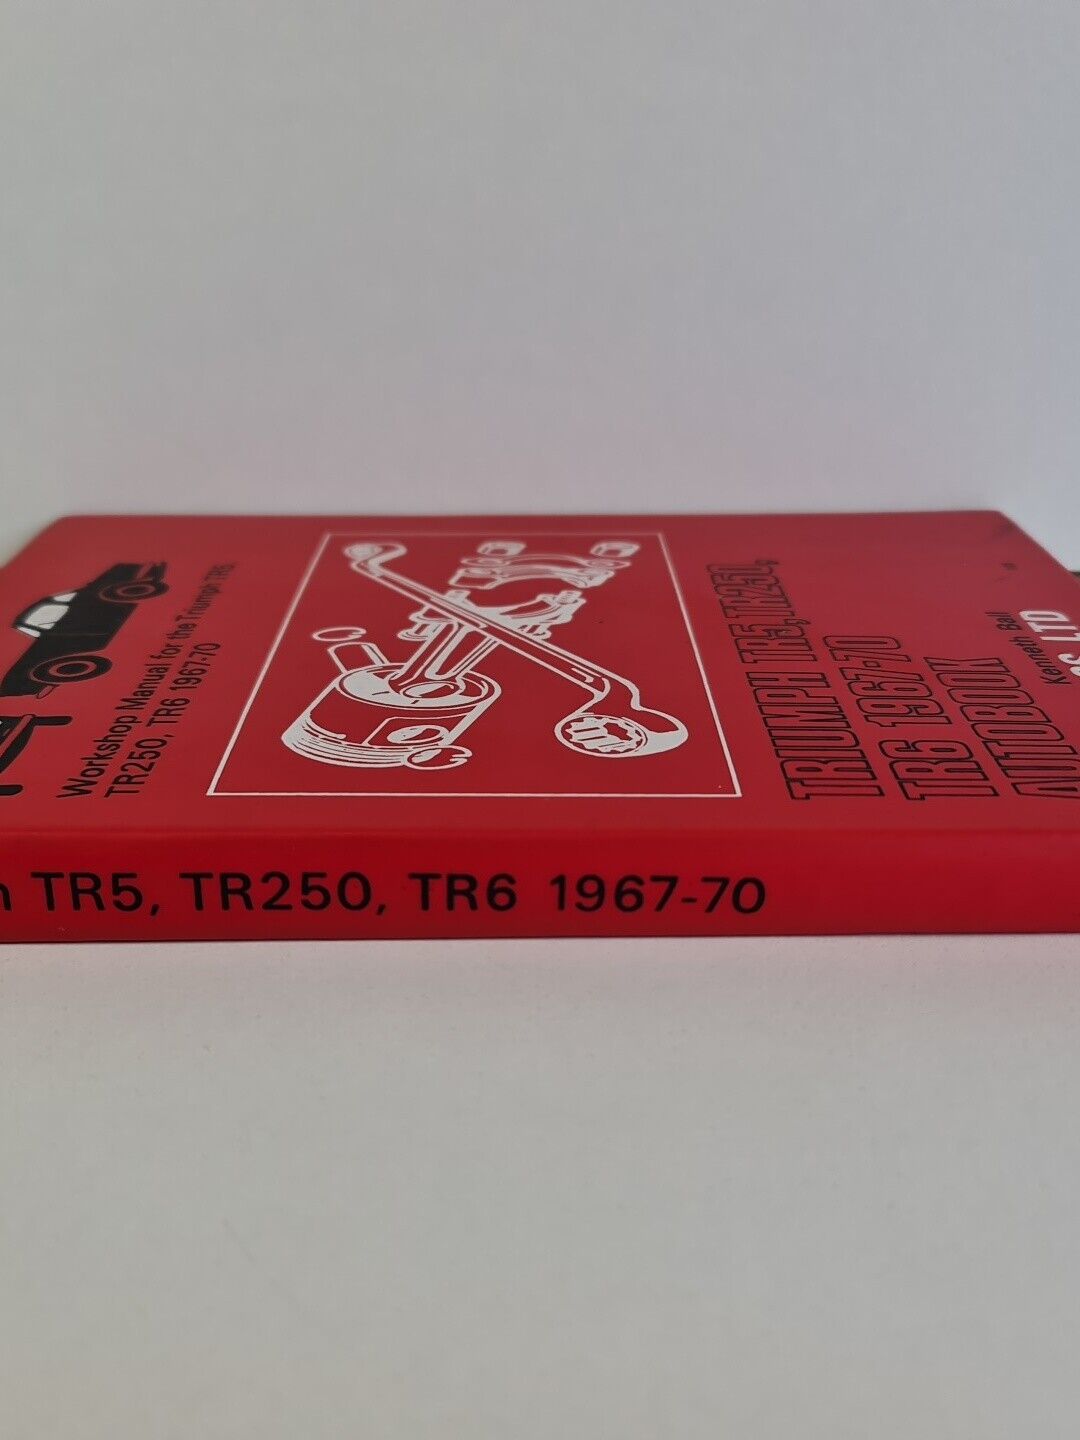 Triumph TR5, TR250, TR6 1967-70 Autobook by Kenneth Ball (1970)